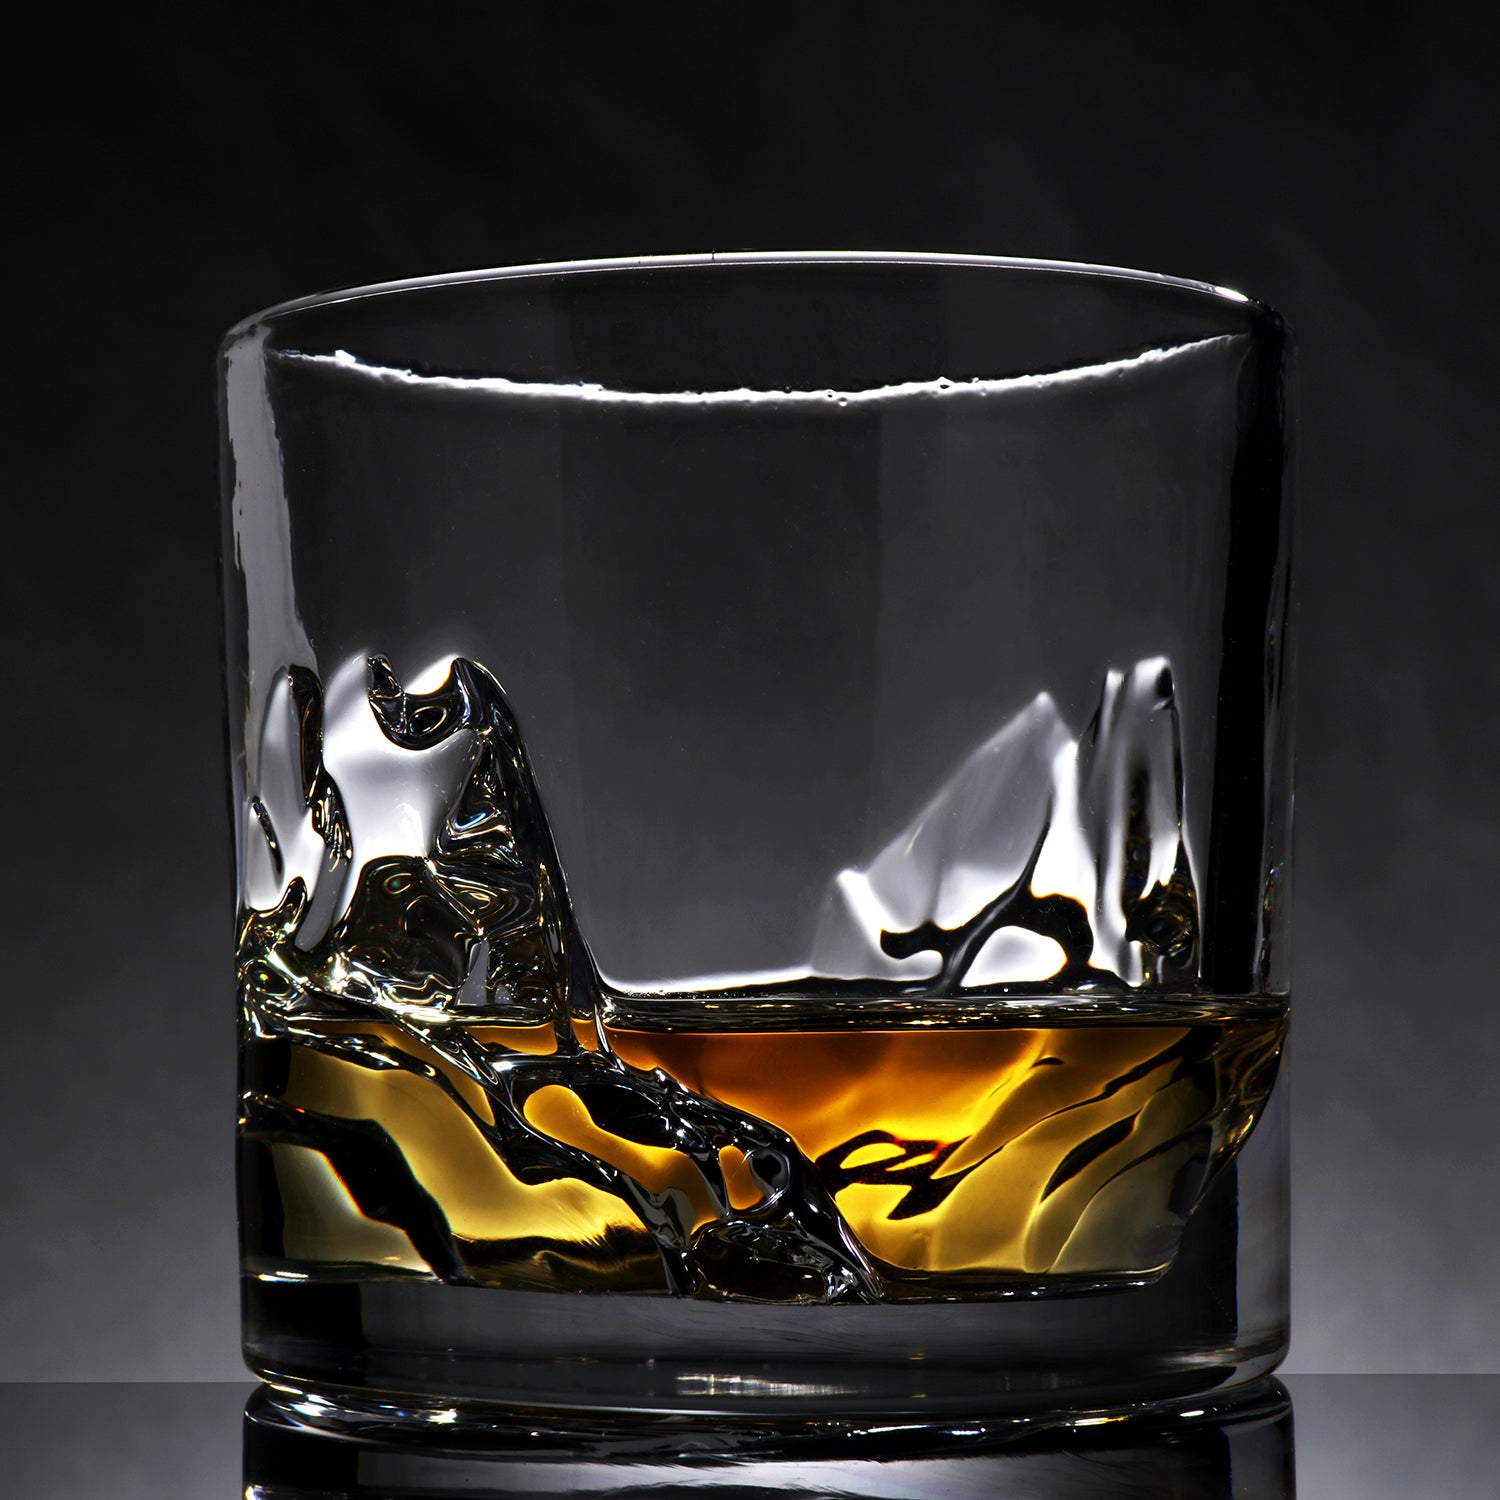 Whisky glass GRAND CANYON set of 2 pcs, 300 ml, Liiton 